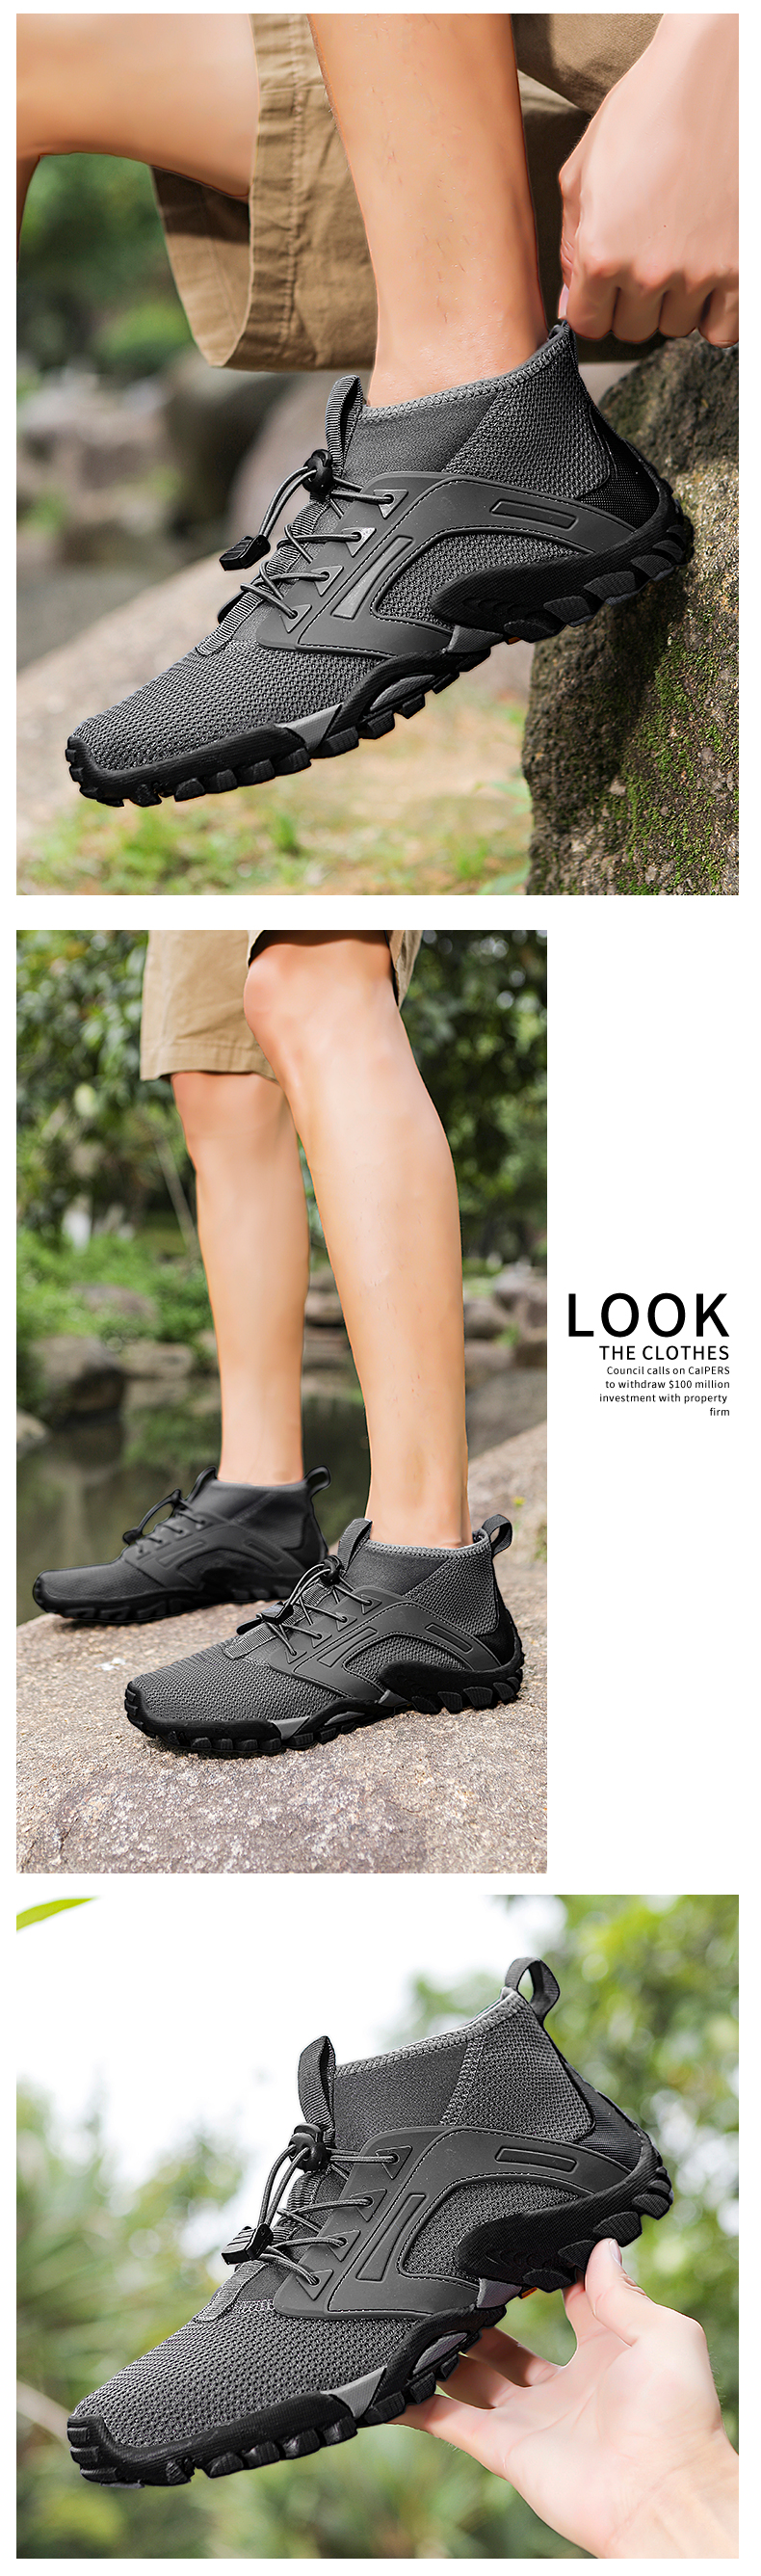 come4buy.com-Lalaki Trekking Footwear Gancang-garing Anti leueur